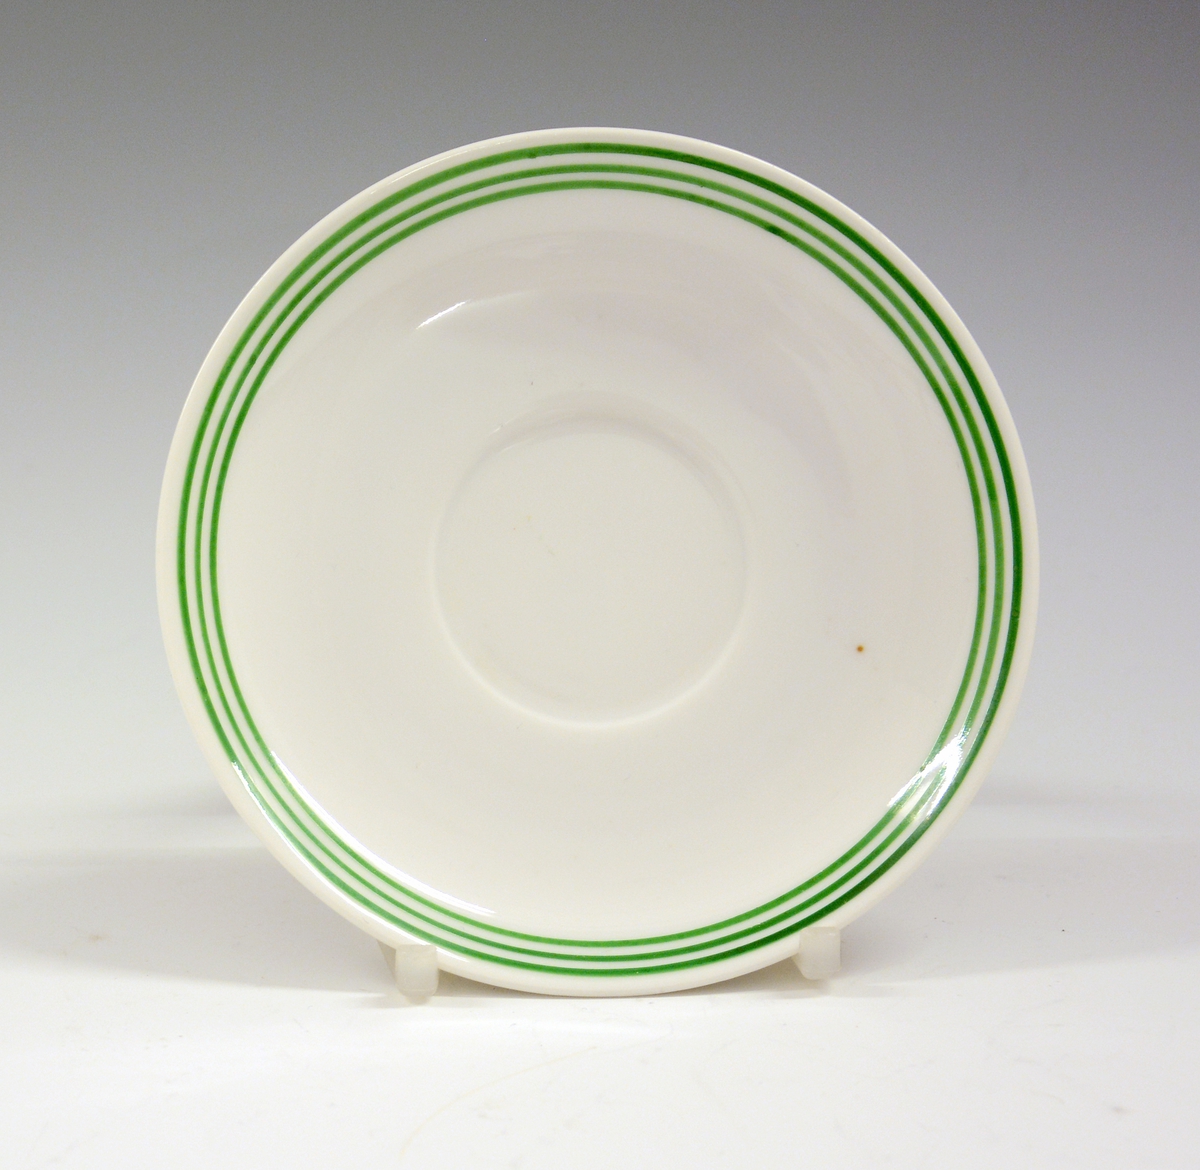 Kaffeskål i porselen til dukkeservise. Hvit glasur. Grønn strek.
Modell 1460.
Dekor "Hønen Petrine 1".